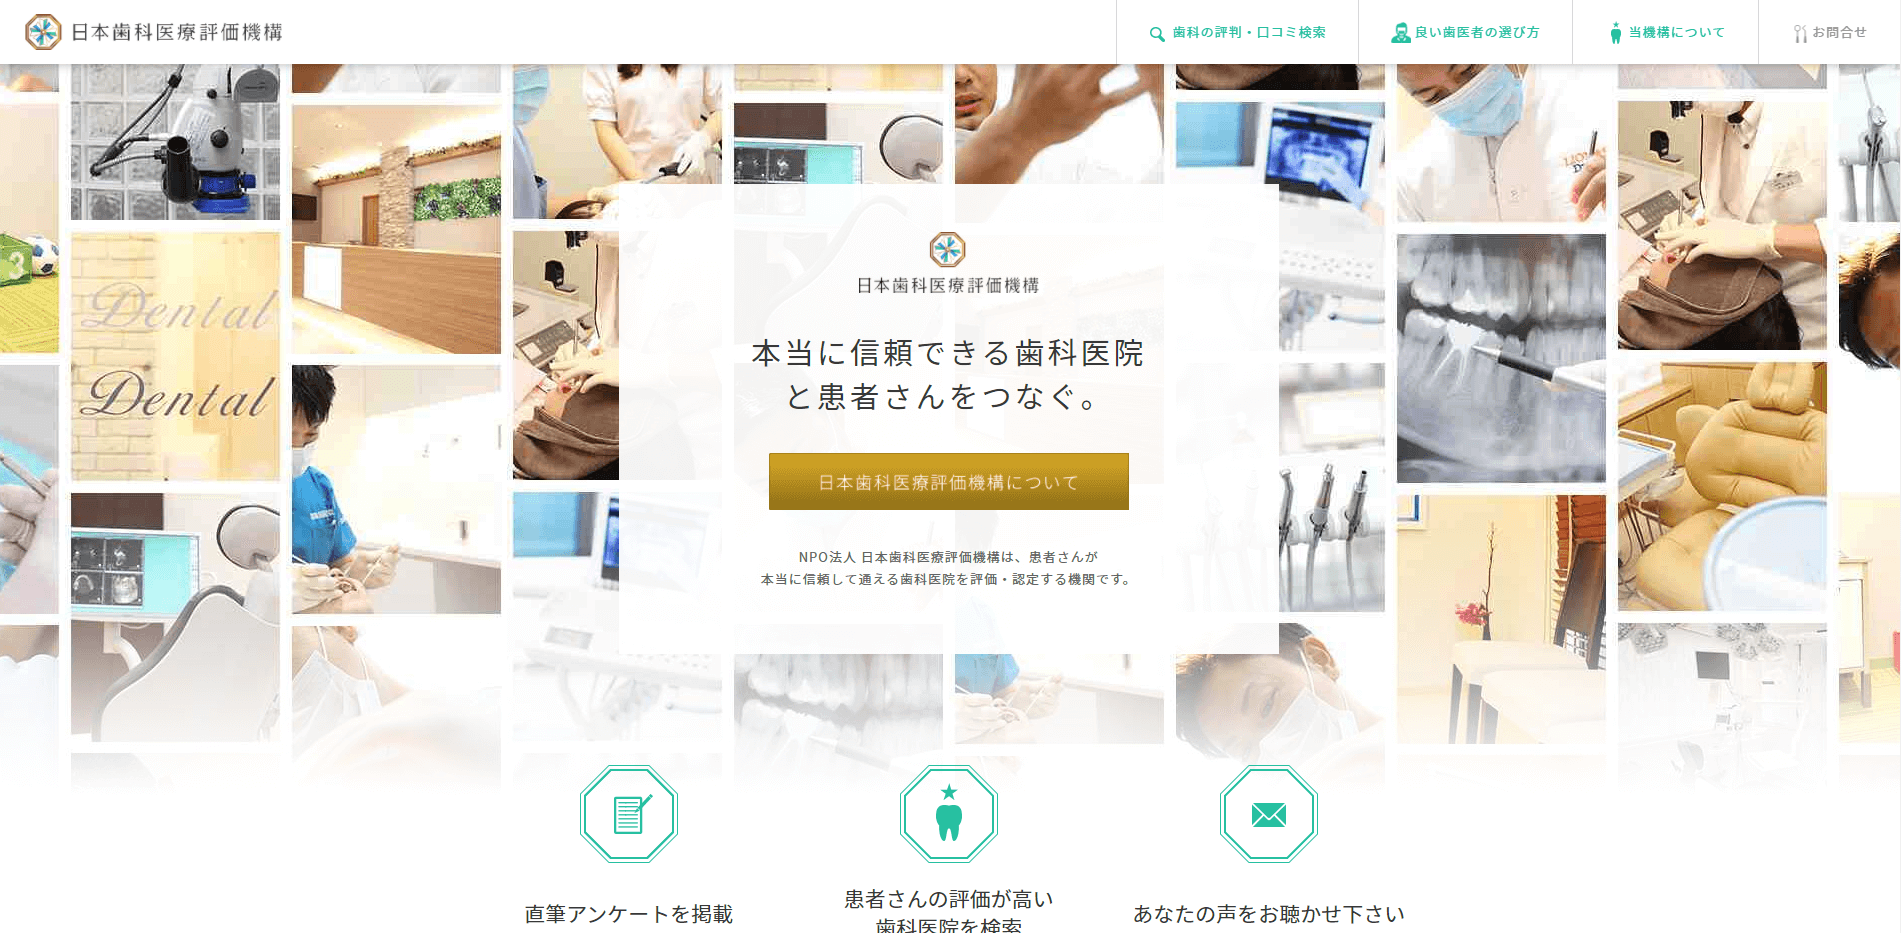 日本歯科医療評価機構ホームページのスクリーンショット